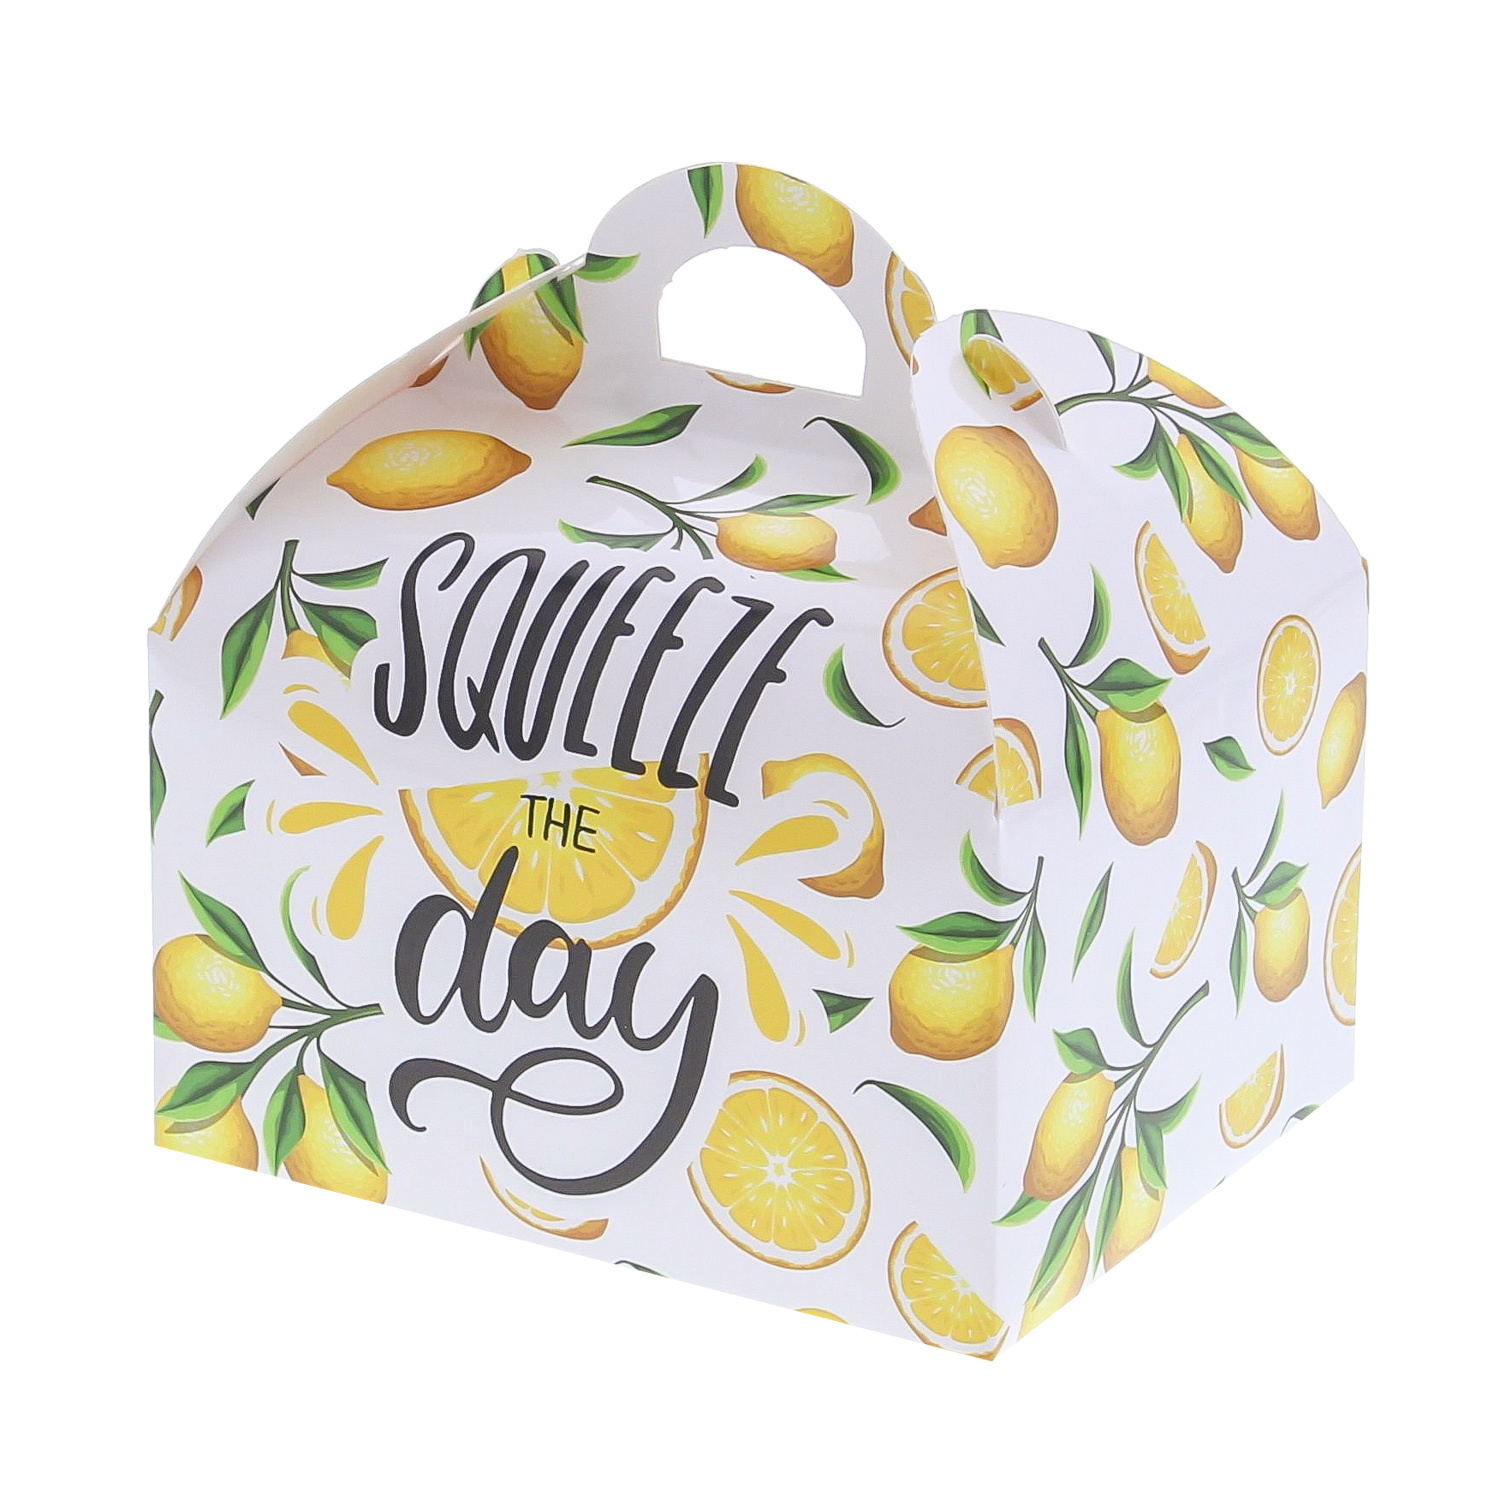 Sweetbox avec poignée 500 gr. "Lemons" squeeze the day - 120*96*130 mm - 48 pièces